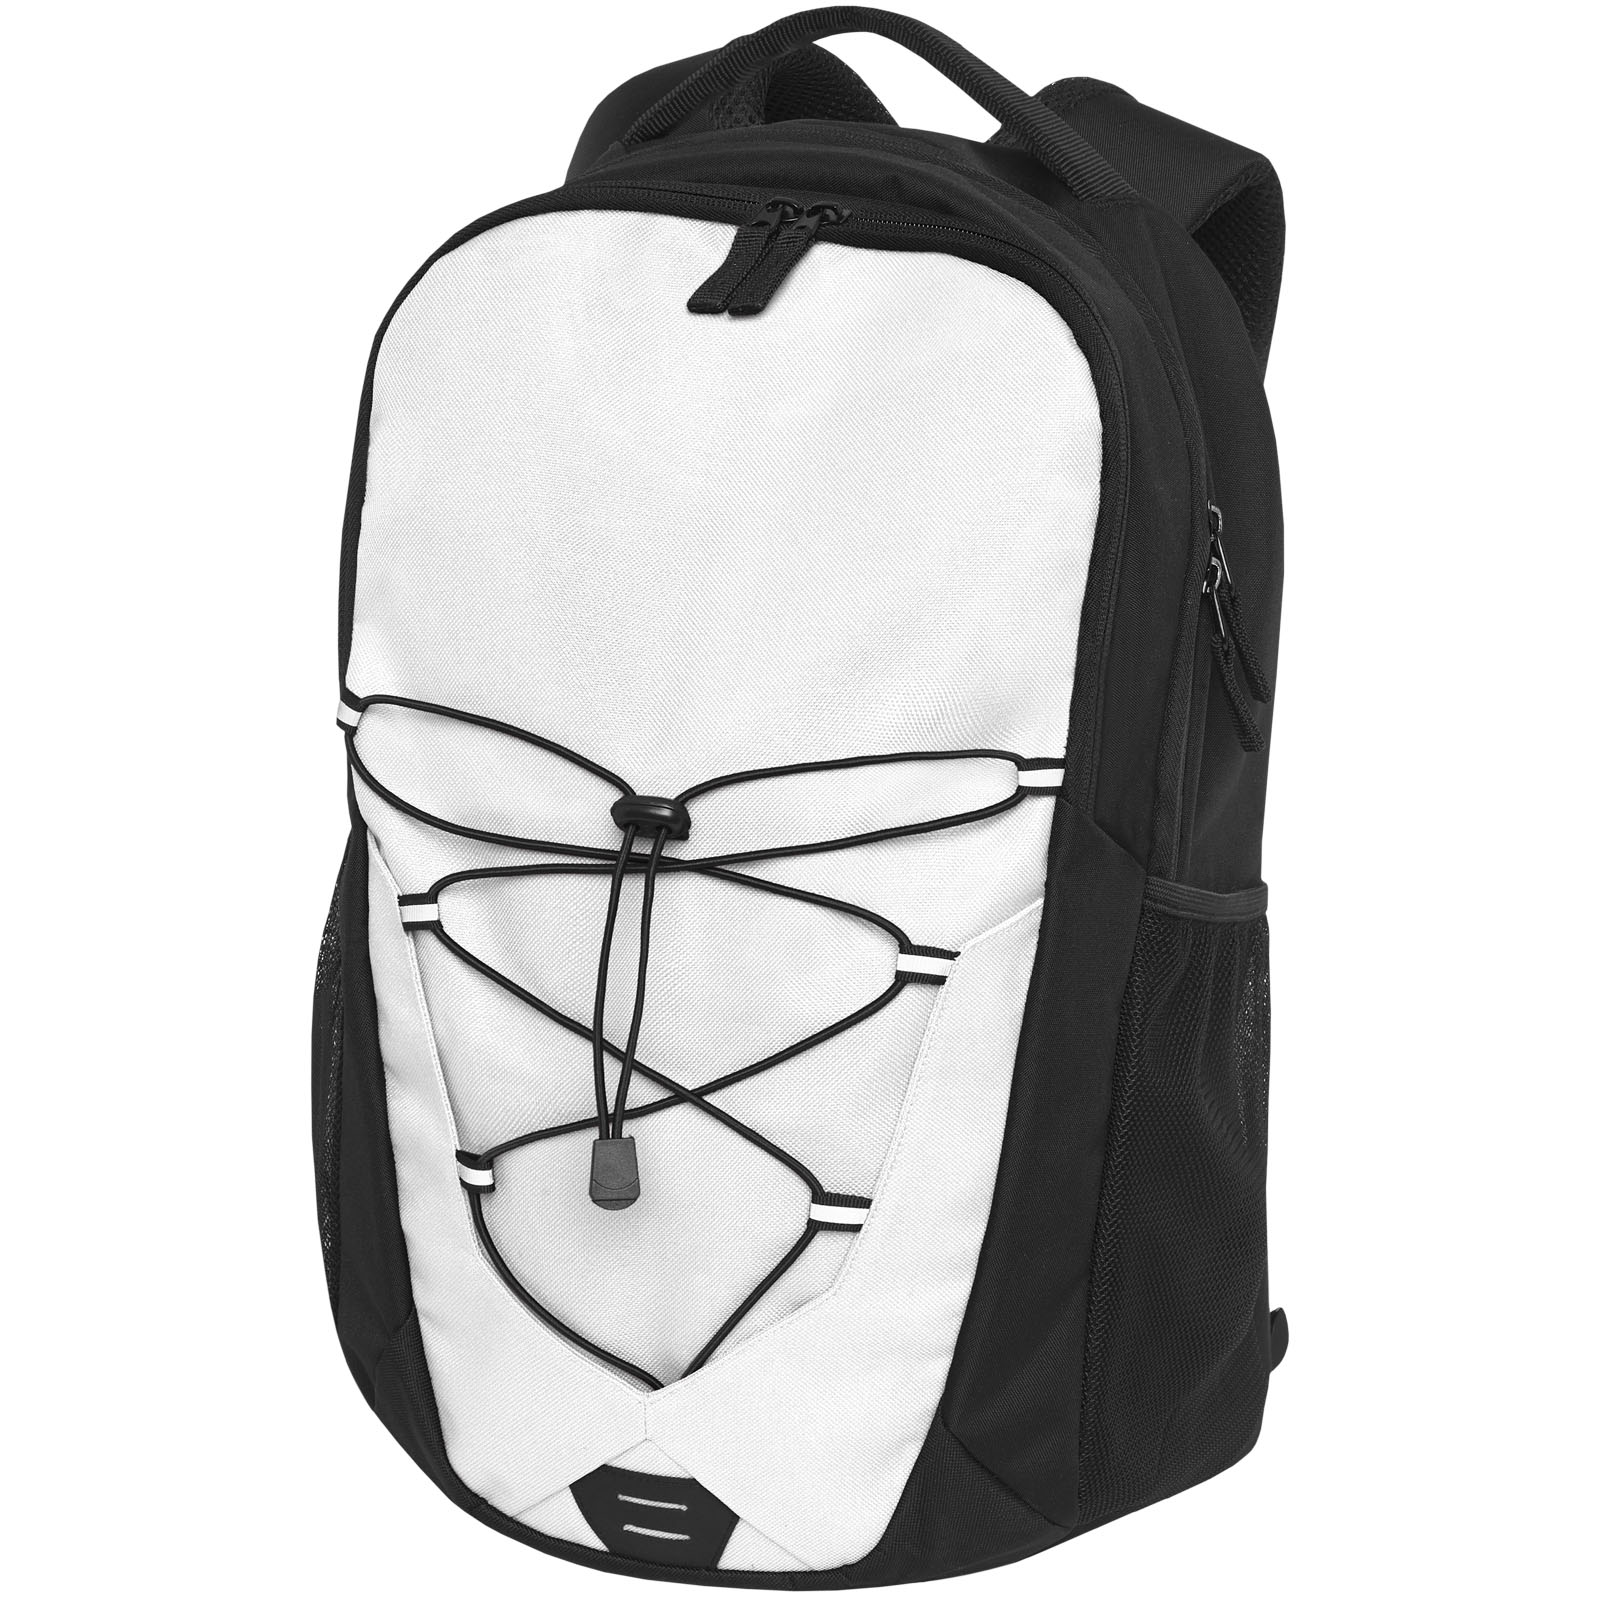 Advertising Laptop Backpacks - Trails backpack 24L - 0